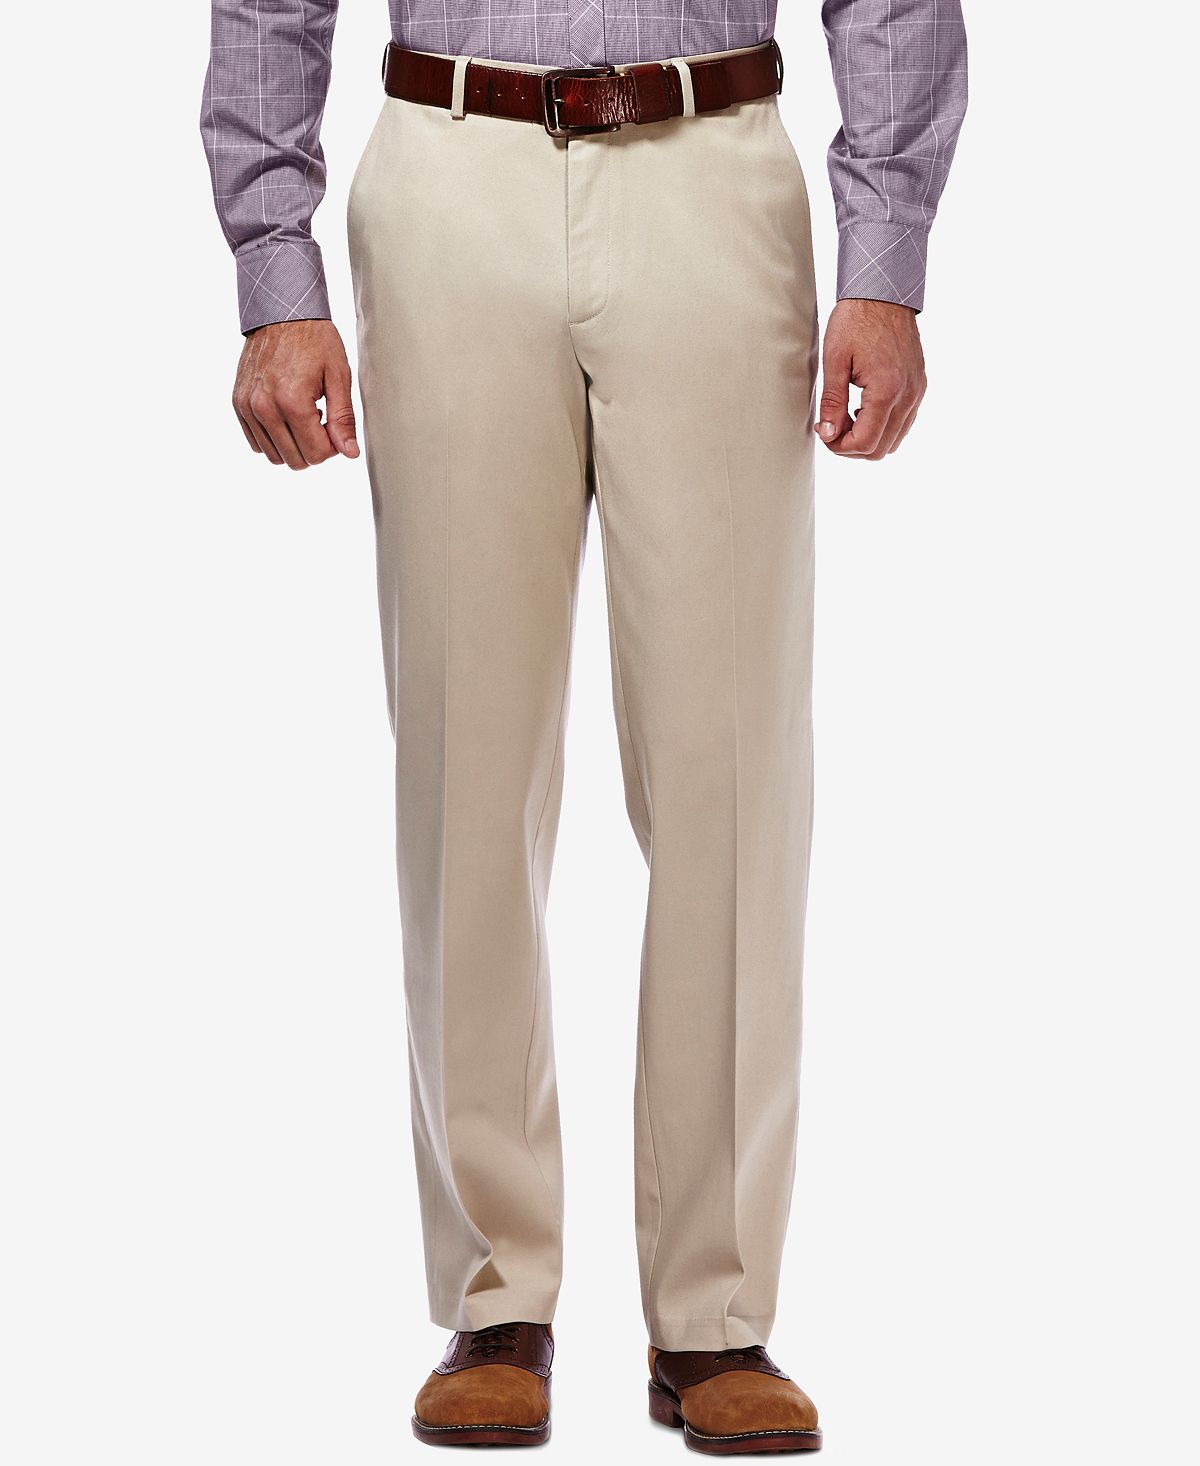 Мужские брюки премиум-класса без железа цвета хаки, классический крой, плоская передняя часть, потайная расширяемая талия Haggar